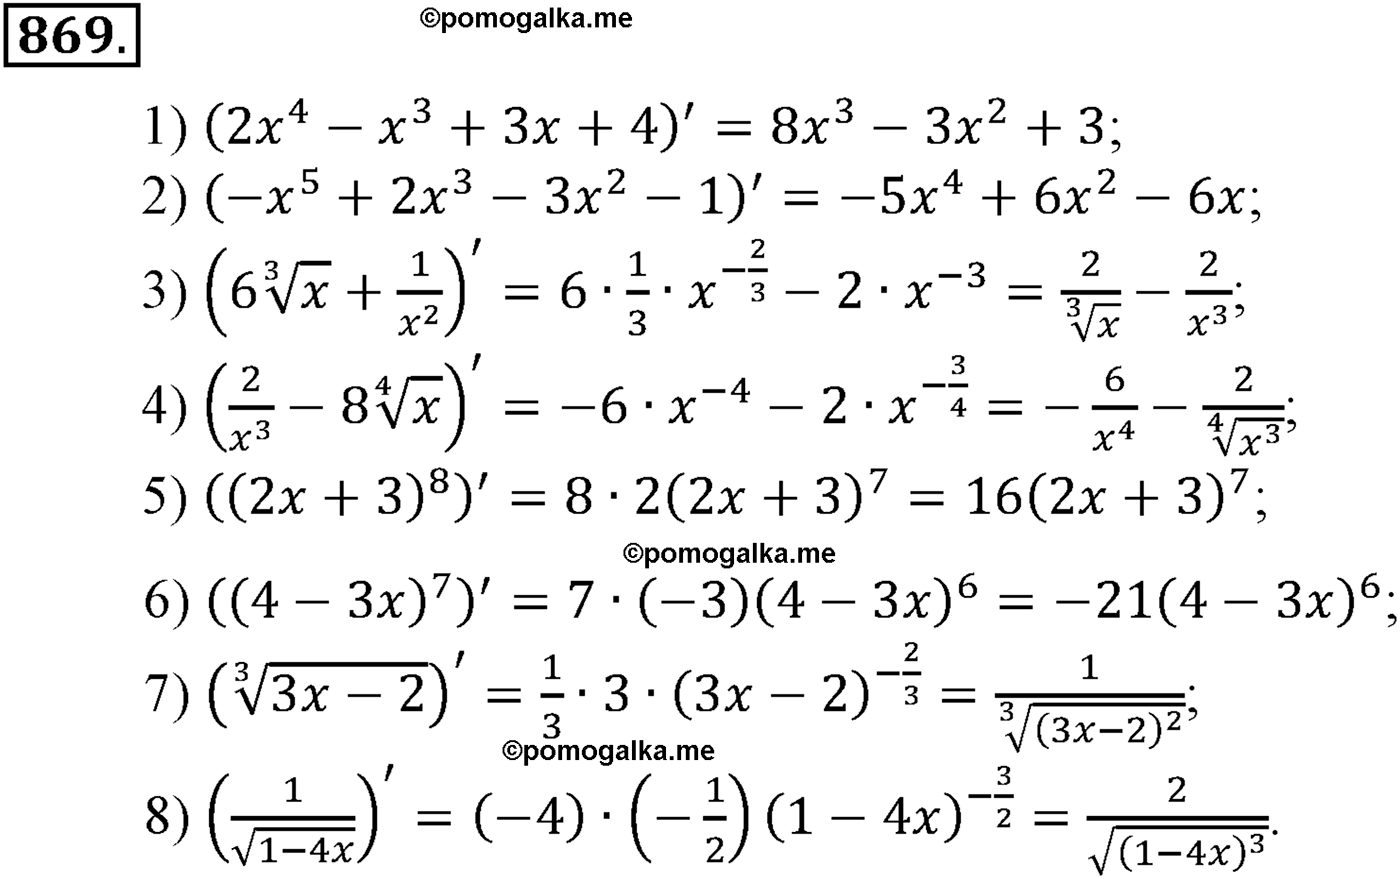 разбор задачи №869 по алгебре за 10-11 класс из учебника Алимова, Колягина